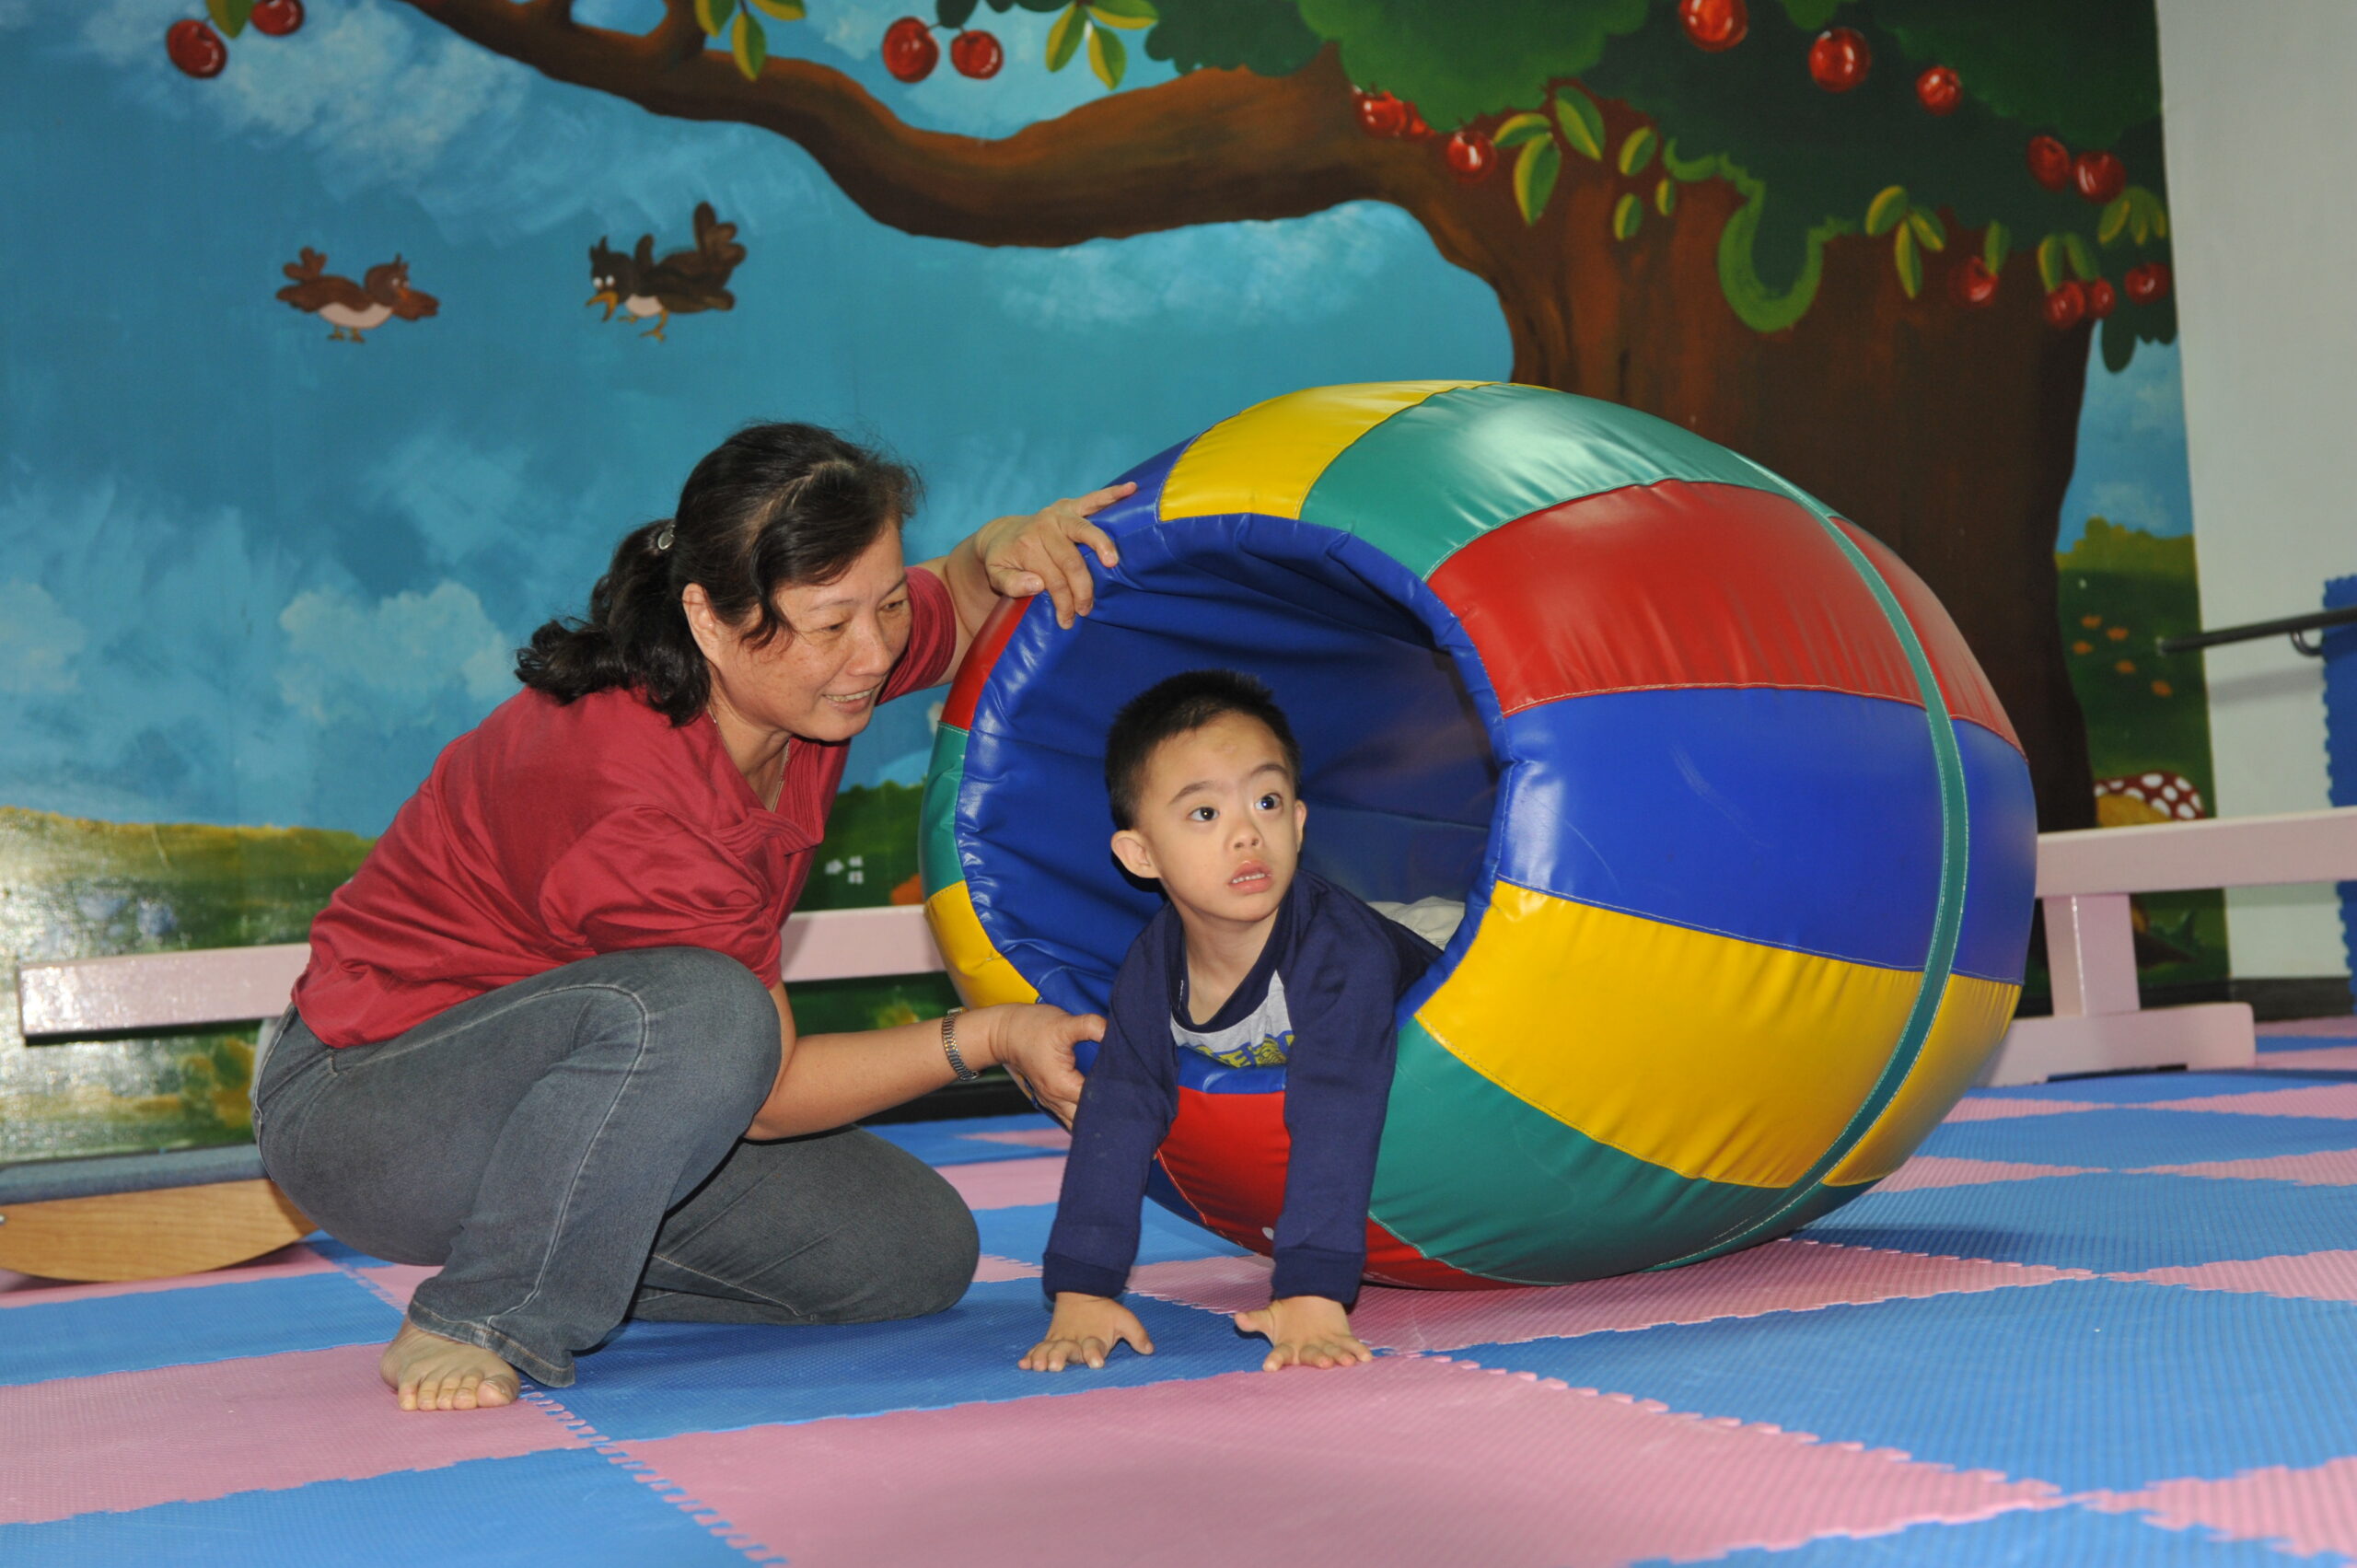 Eine Frau spielt mit einem kleinen Jungen mit Downsyndrom in einer Gymnastikröhre.